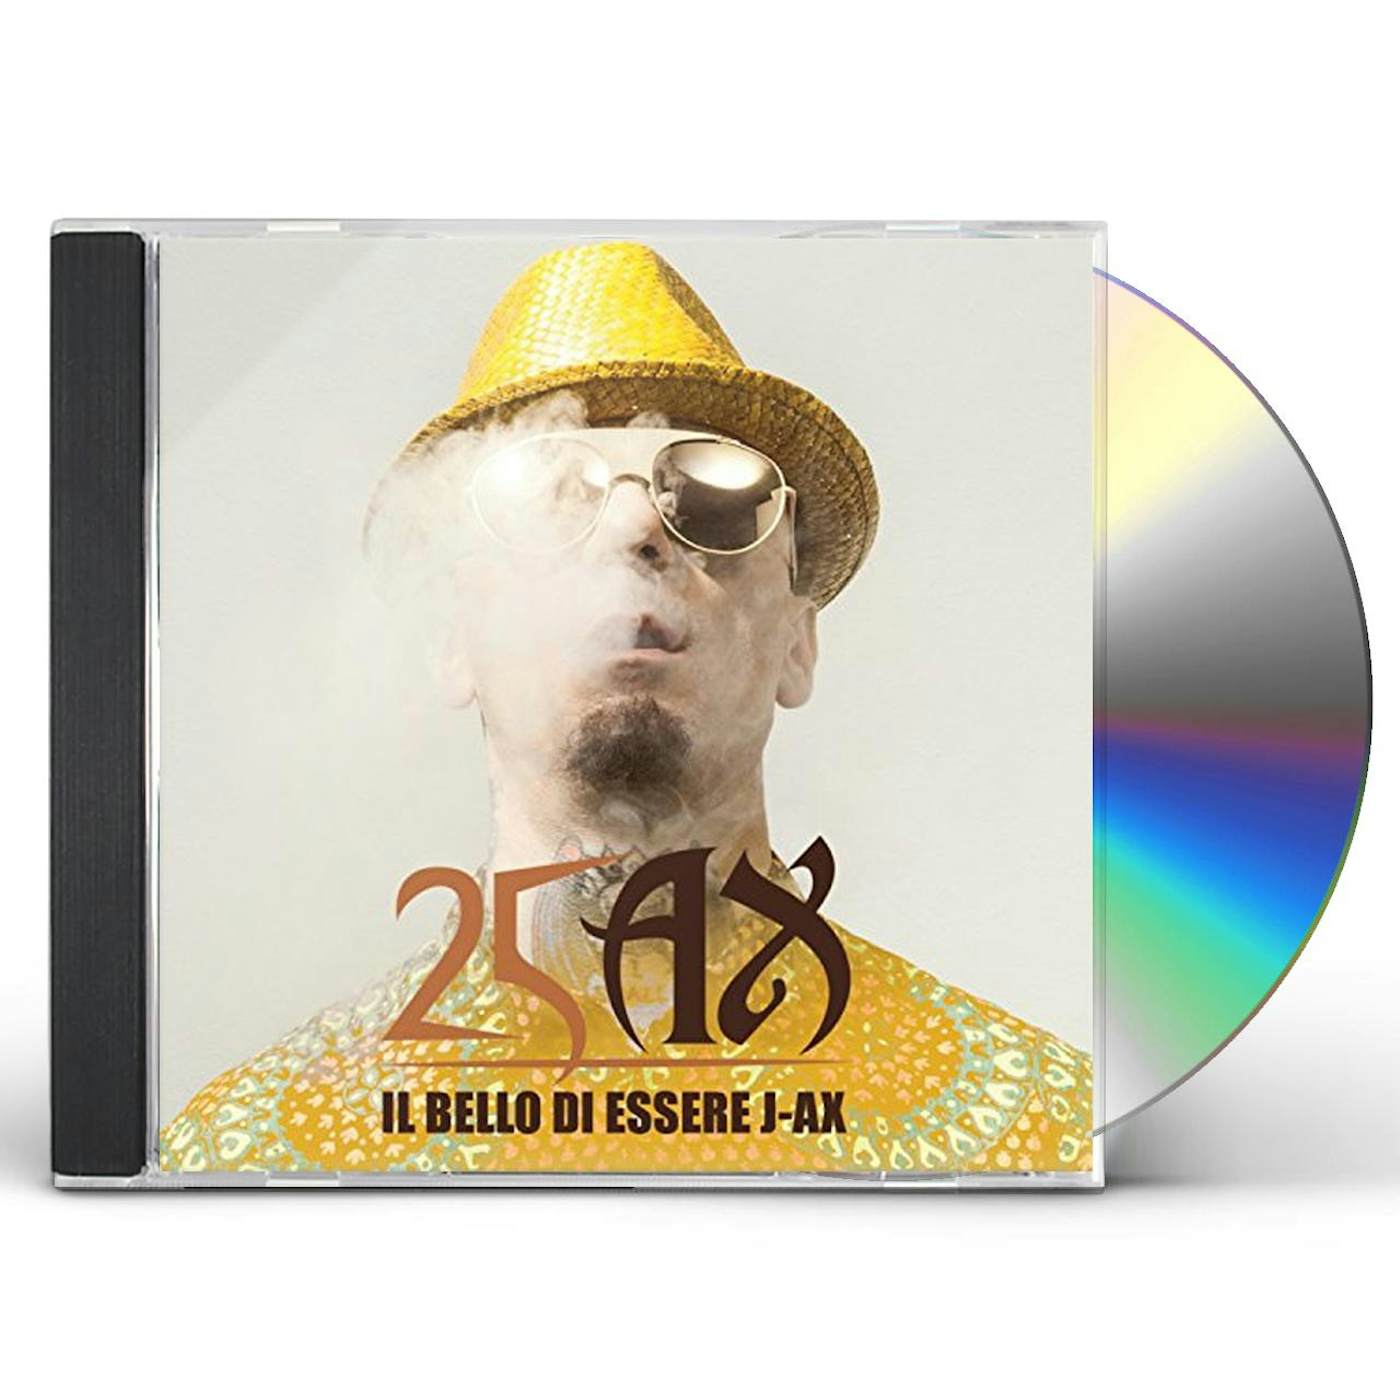 IL BELLO DI ESSERE J-AX: 25 ANNI DI SUCCESSI CD